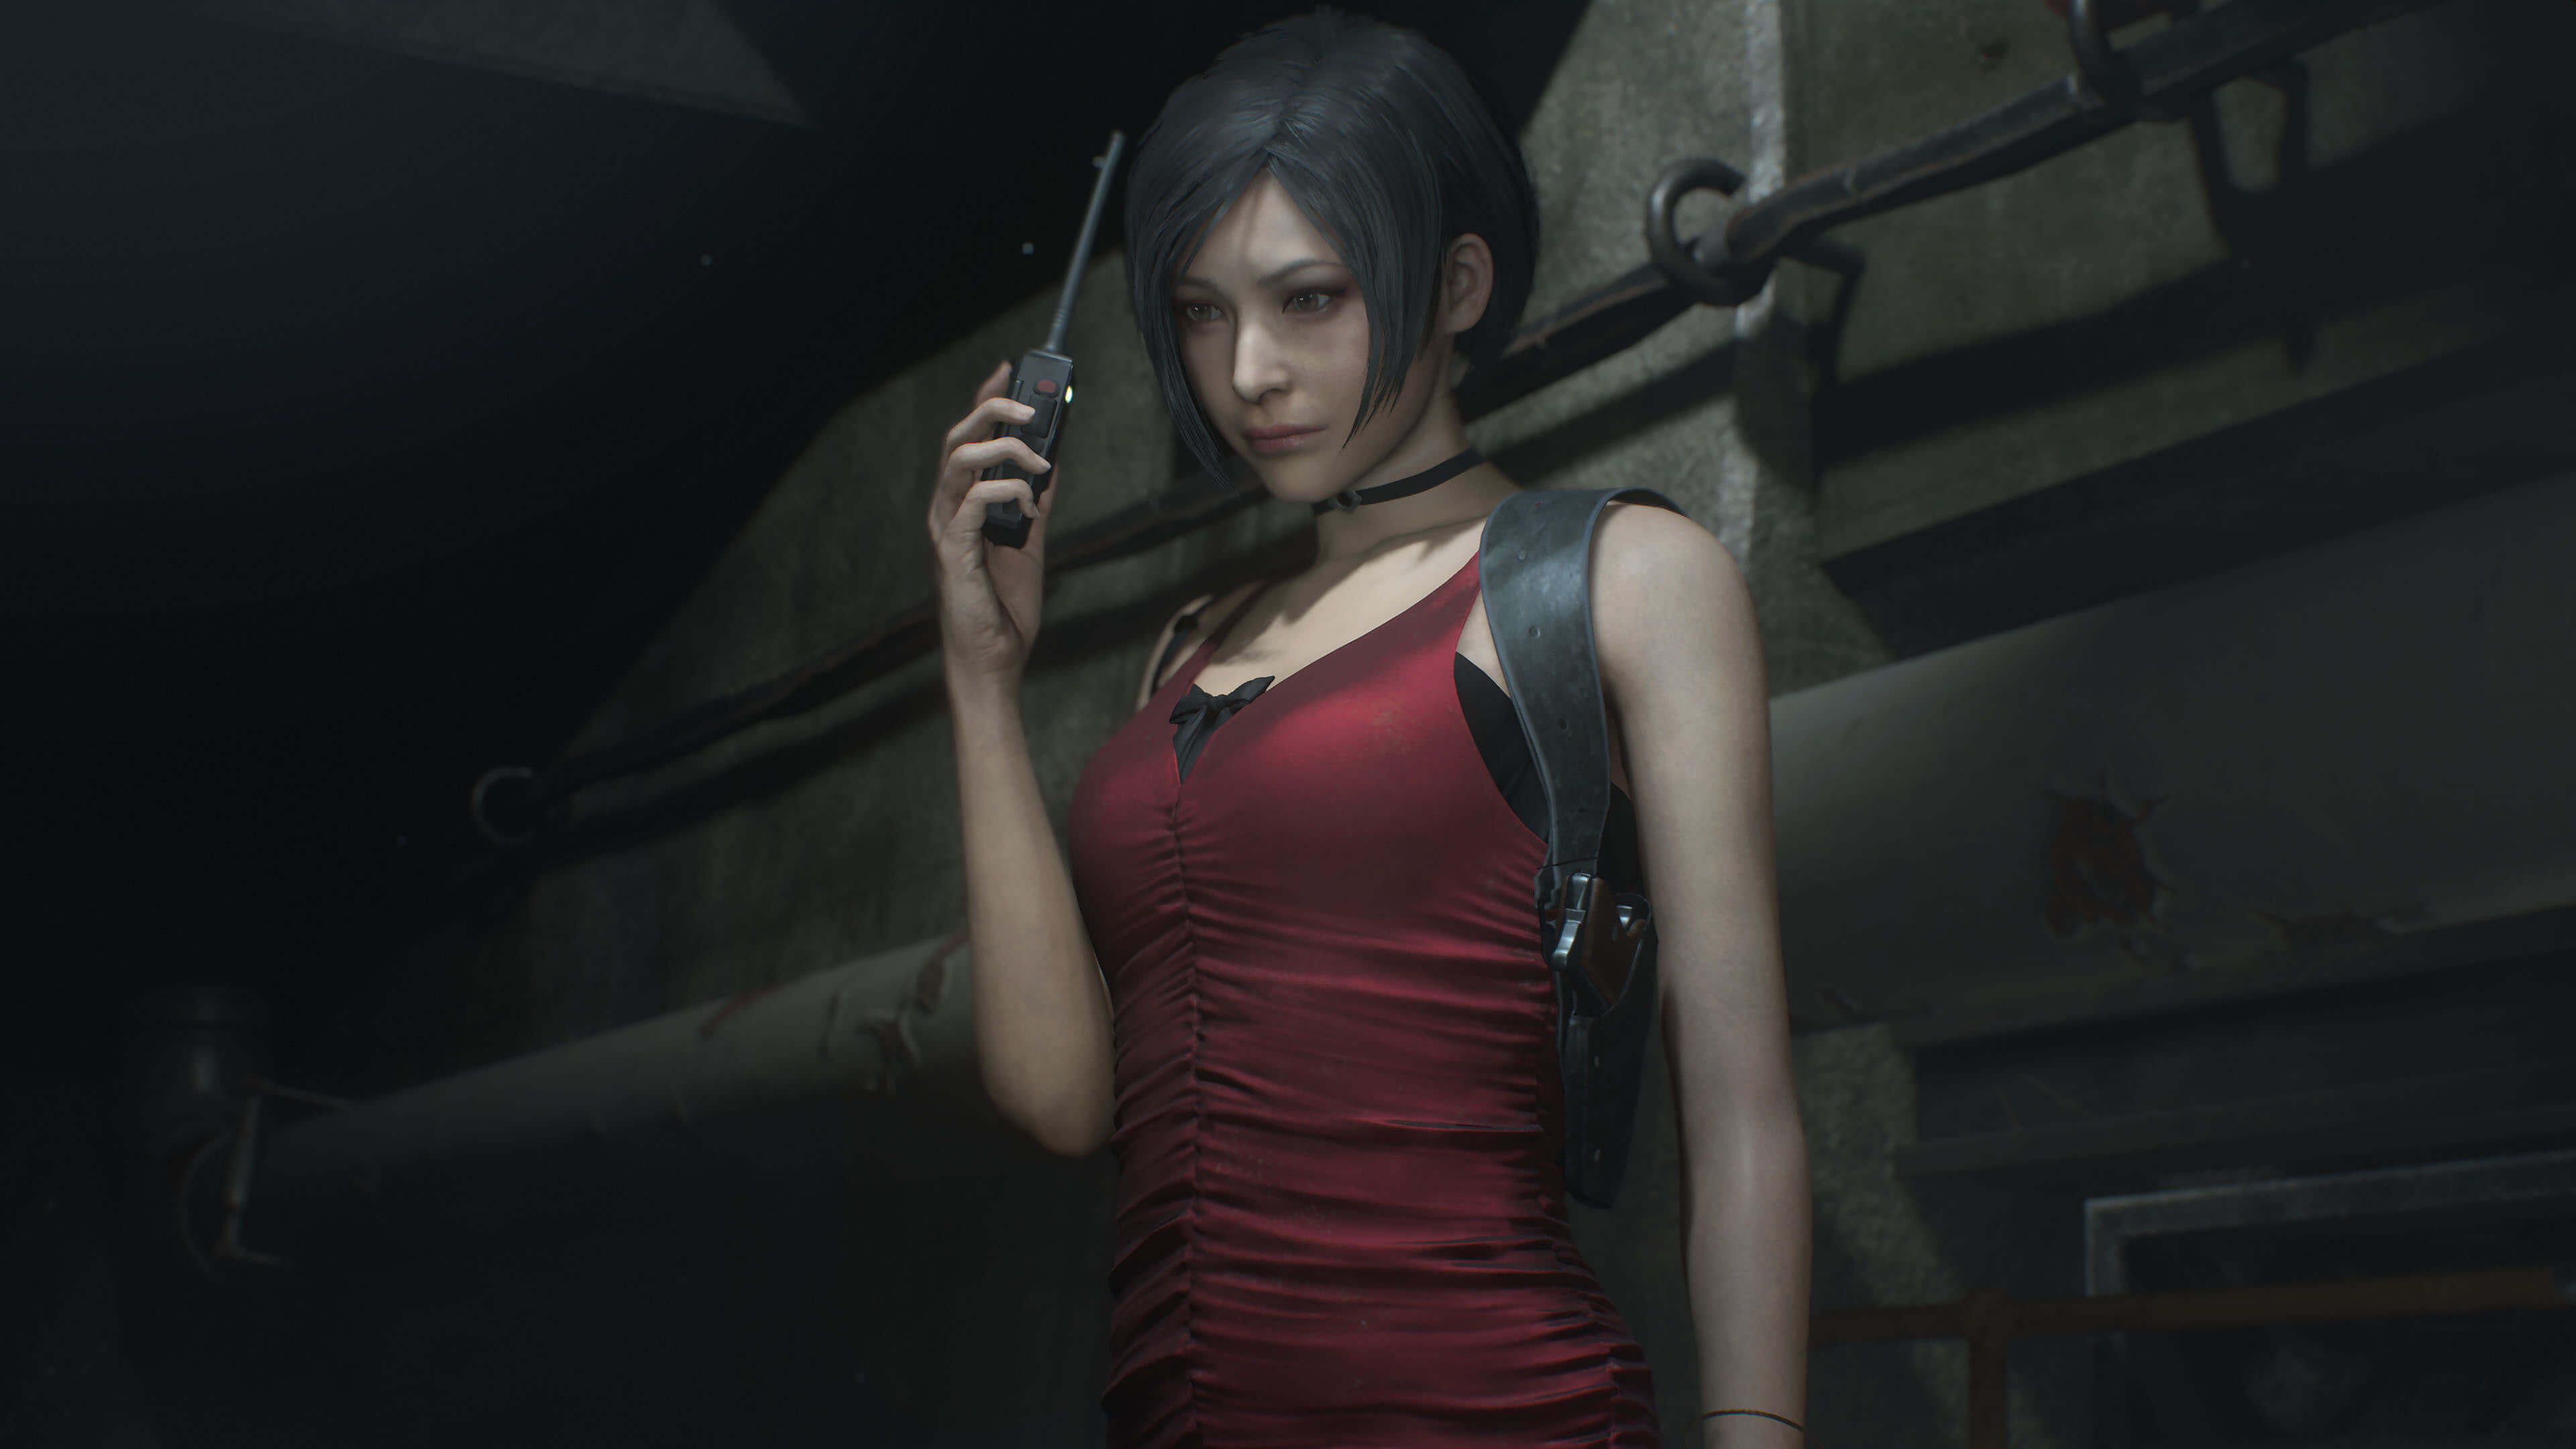 Ultimate Trainer for Resident Evil 2 Remake Mod - Download